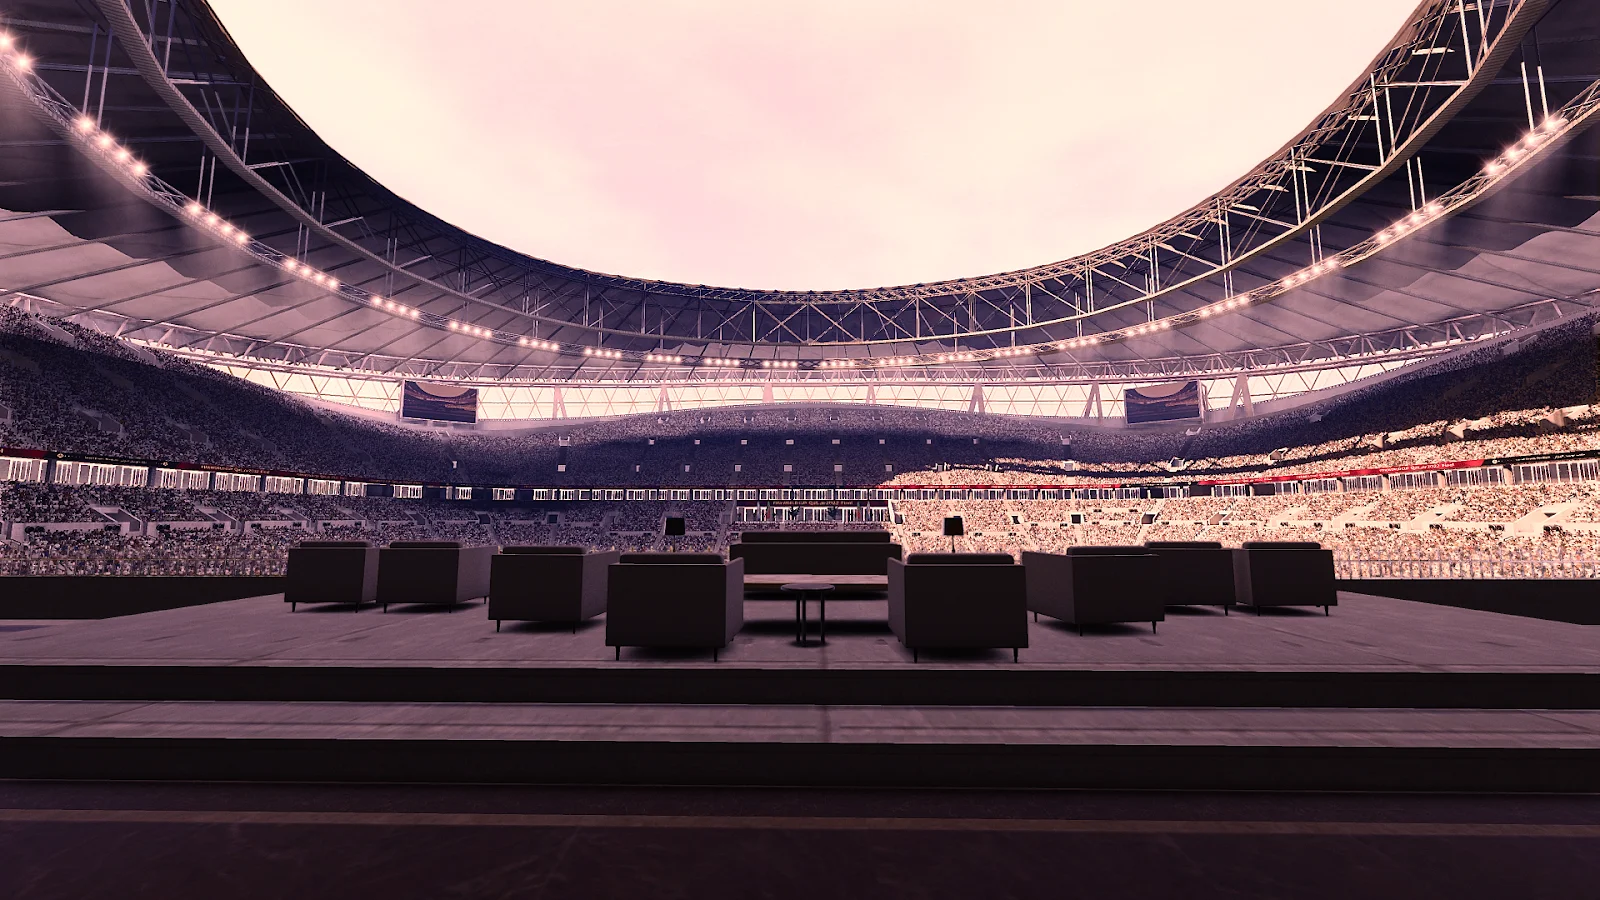 Stadium Pack World Cup 2022 - World Cup 2022 Stadium Pack